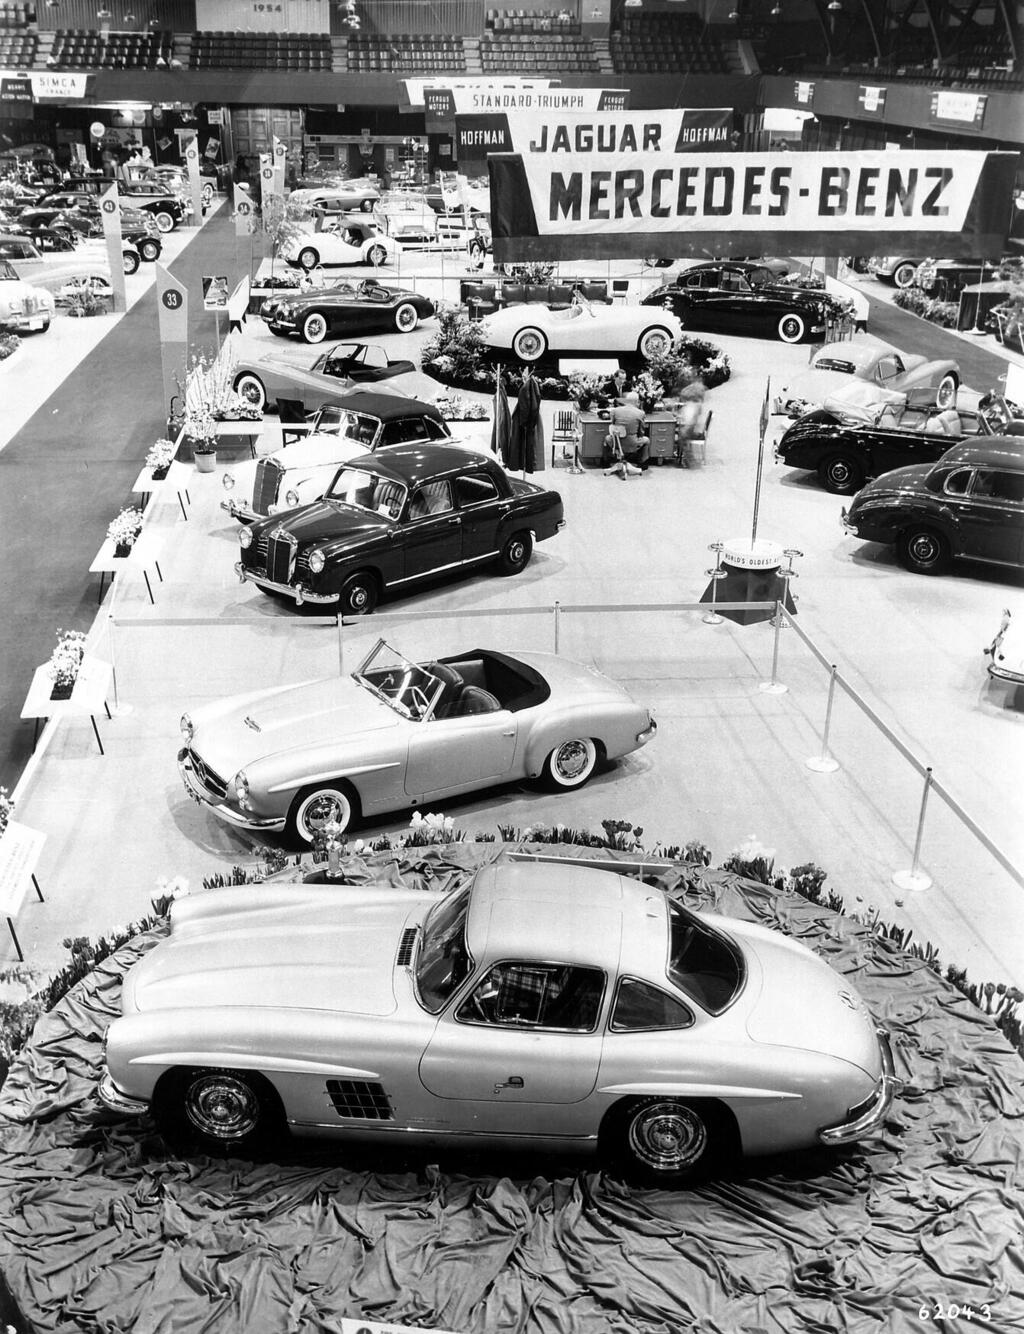 תצוגה מקס הופמן מוטורס תערוכת הרכב בניו יורק 1954